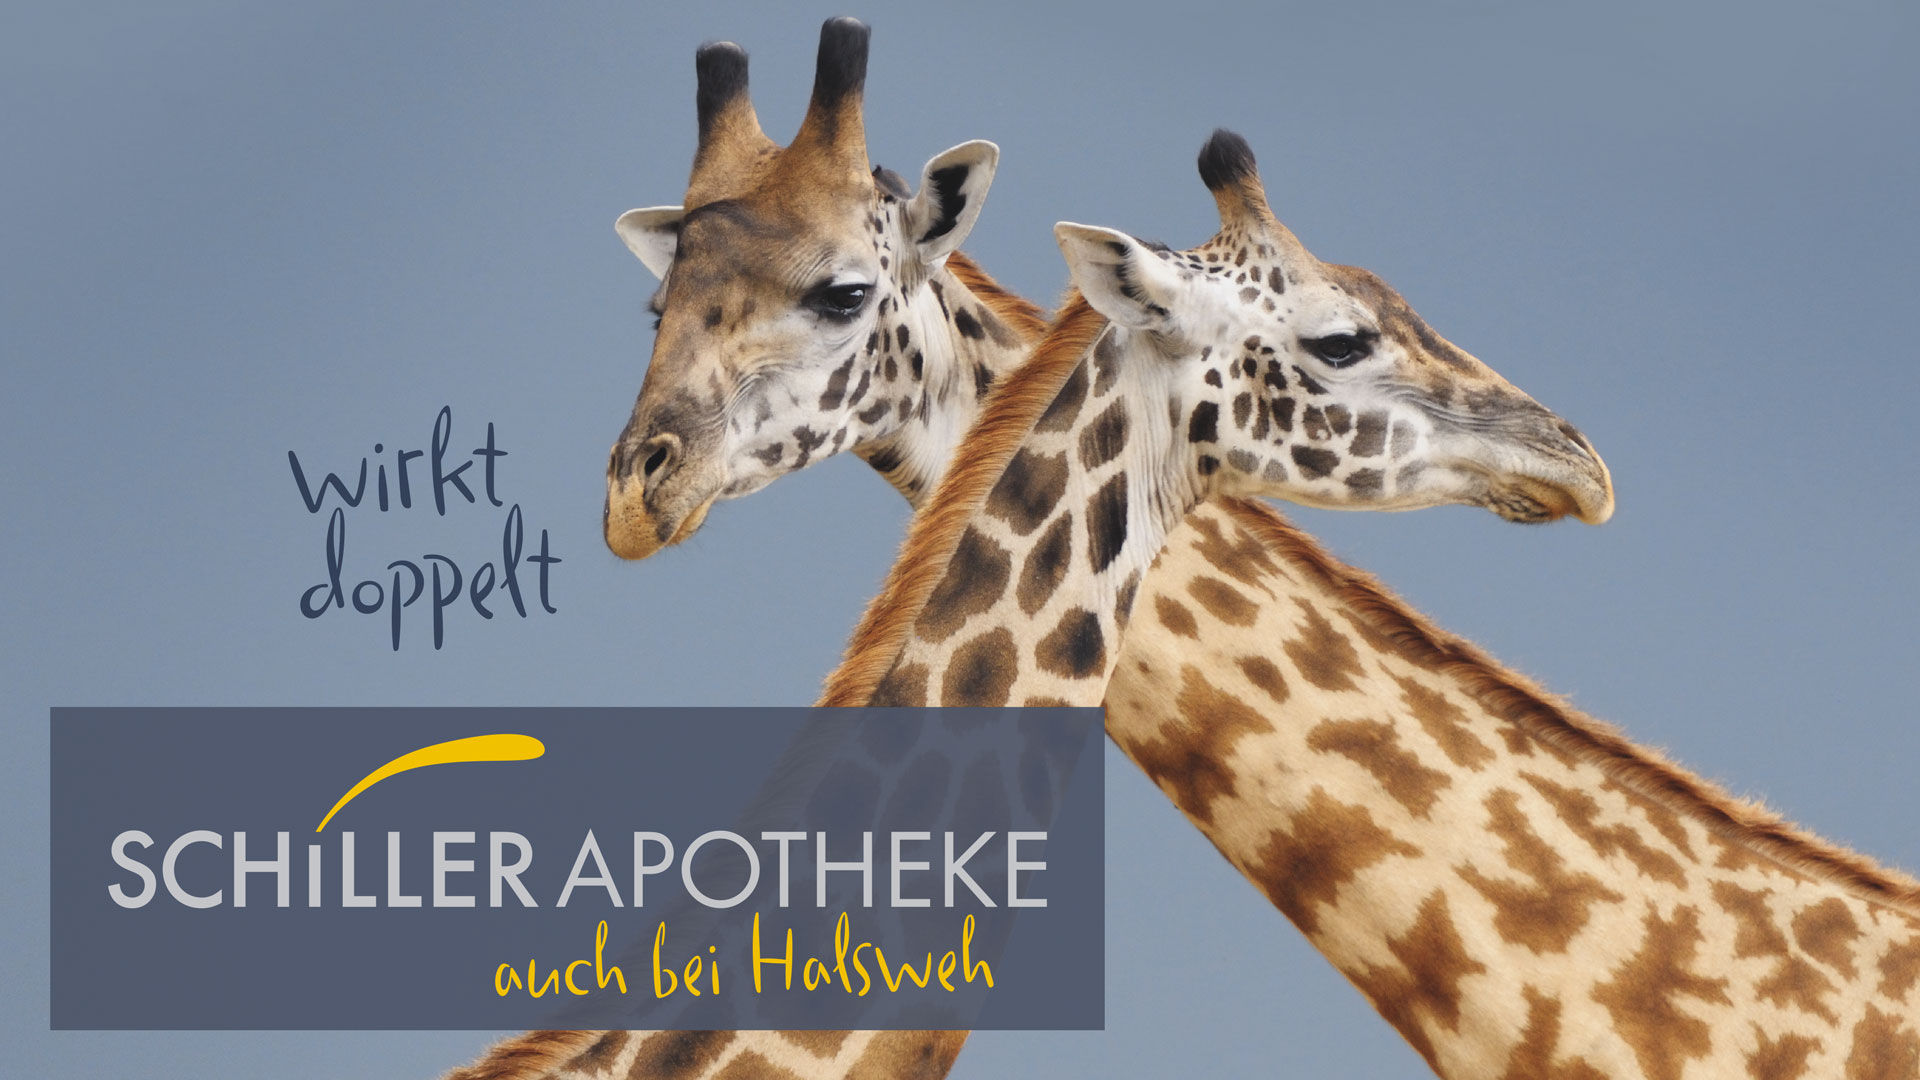 Zwei Giraffen die die Hälse überkreuzen mit dem Logo Schiller Apotheke wirkt doppelt auch bei Halsweh